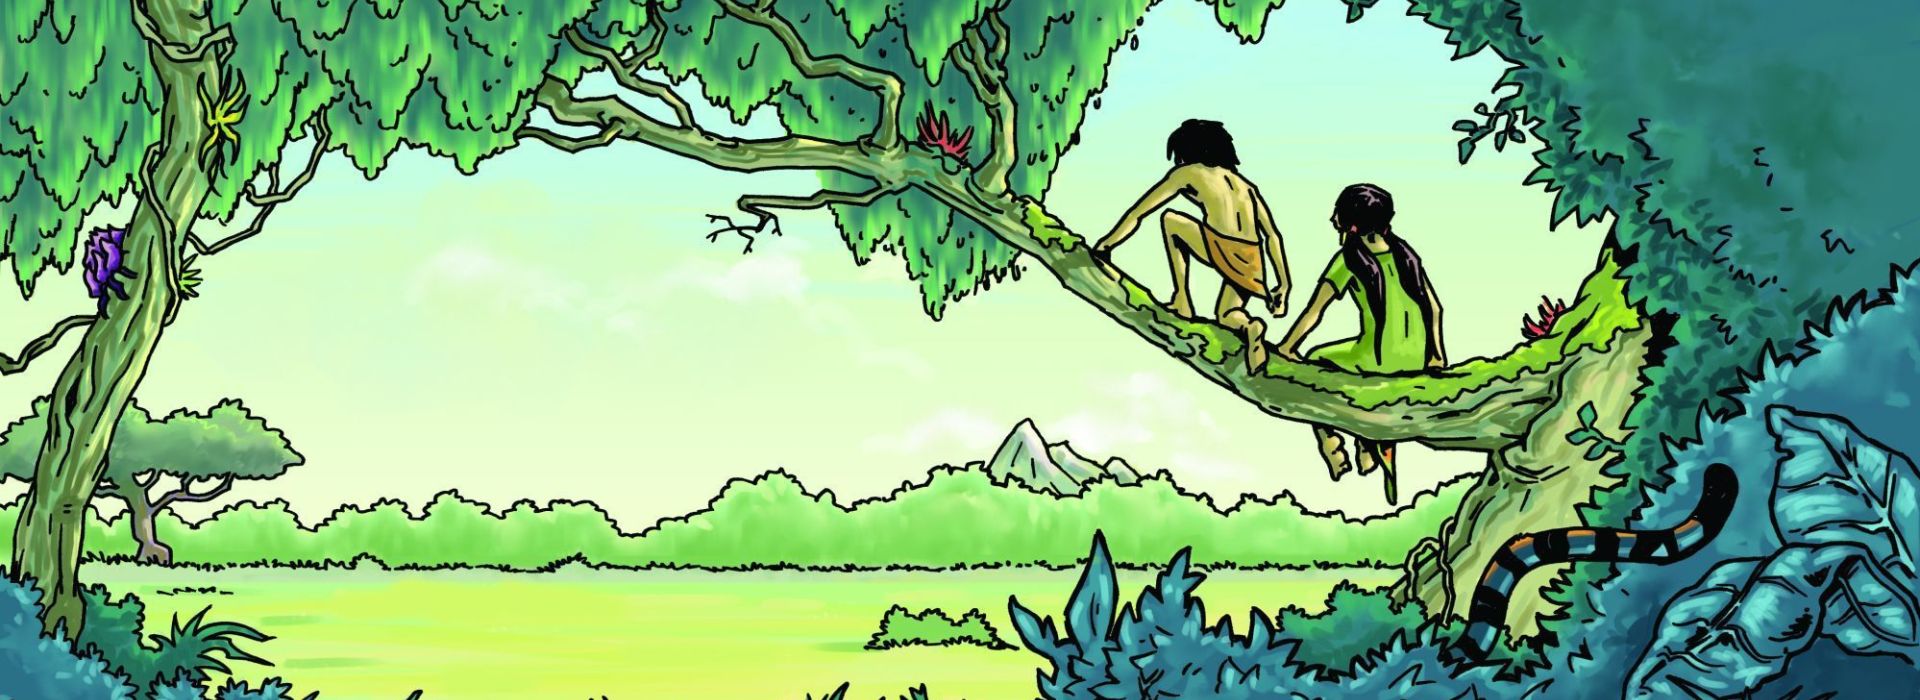 Illustratie uit boek Jungle-avonturen van Shanti en Mowgli